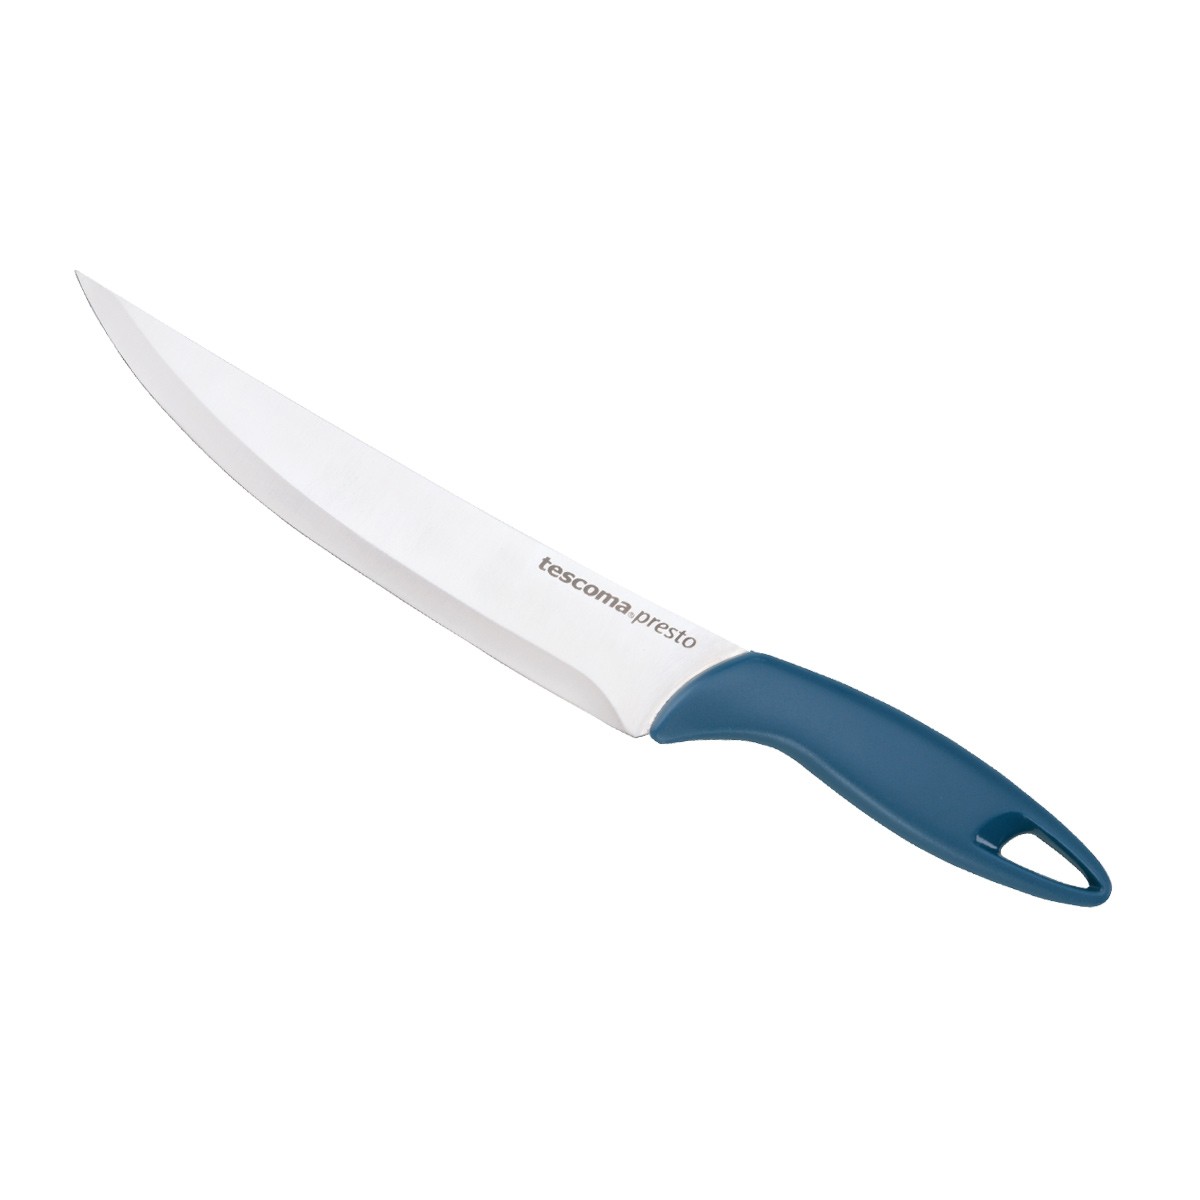 Nůž porcovací PRESTO 20 cm